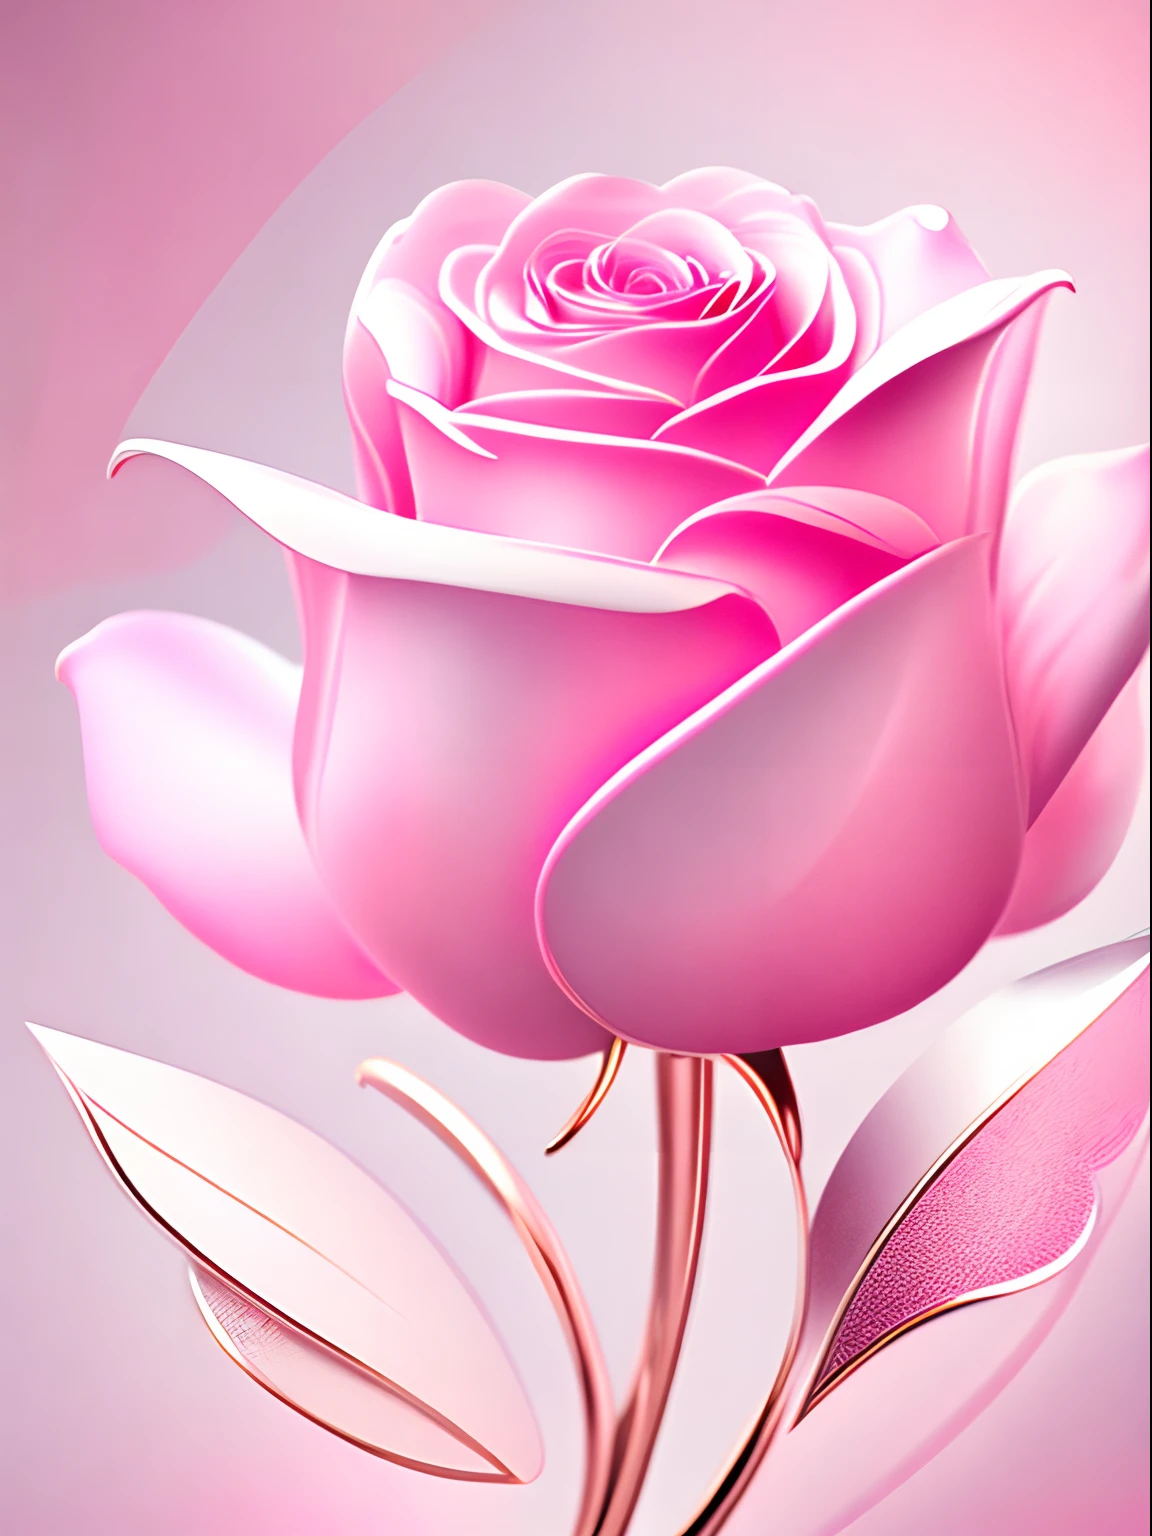 Rosa rosa abstracta，el fondo de pantalla，Estilo de diseño gráfico.，detalles claros，Tiene una gran cantidad de colores lineales metálicos.，Matiz blanco limpio